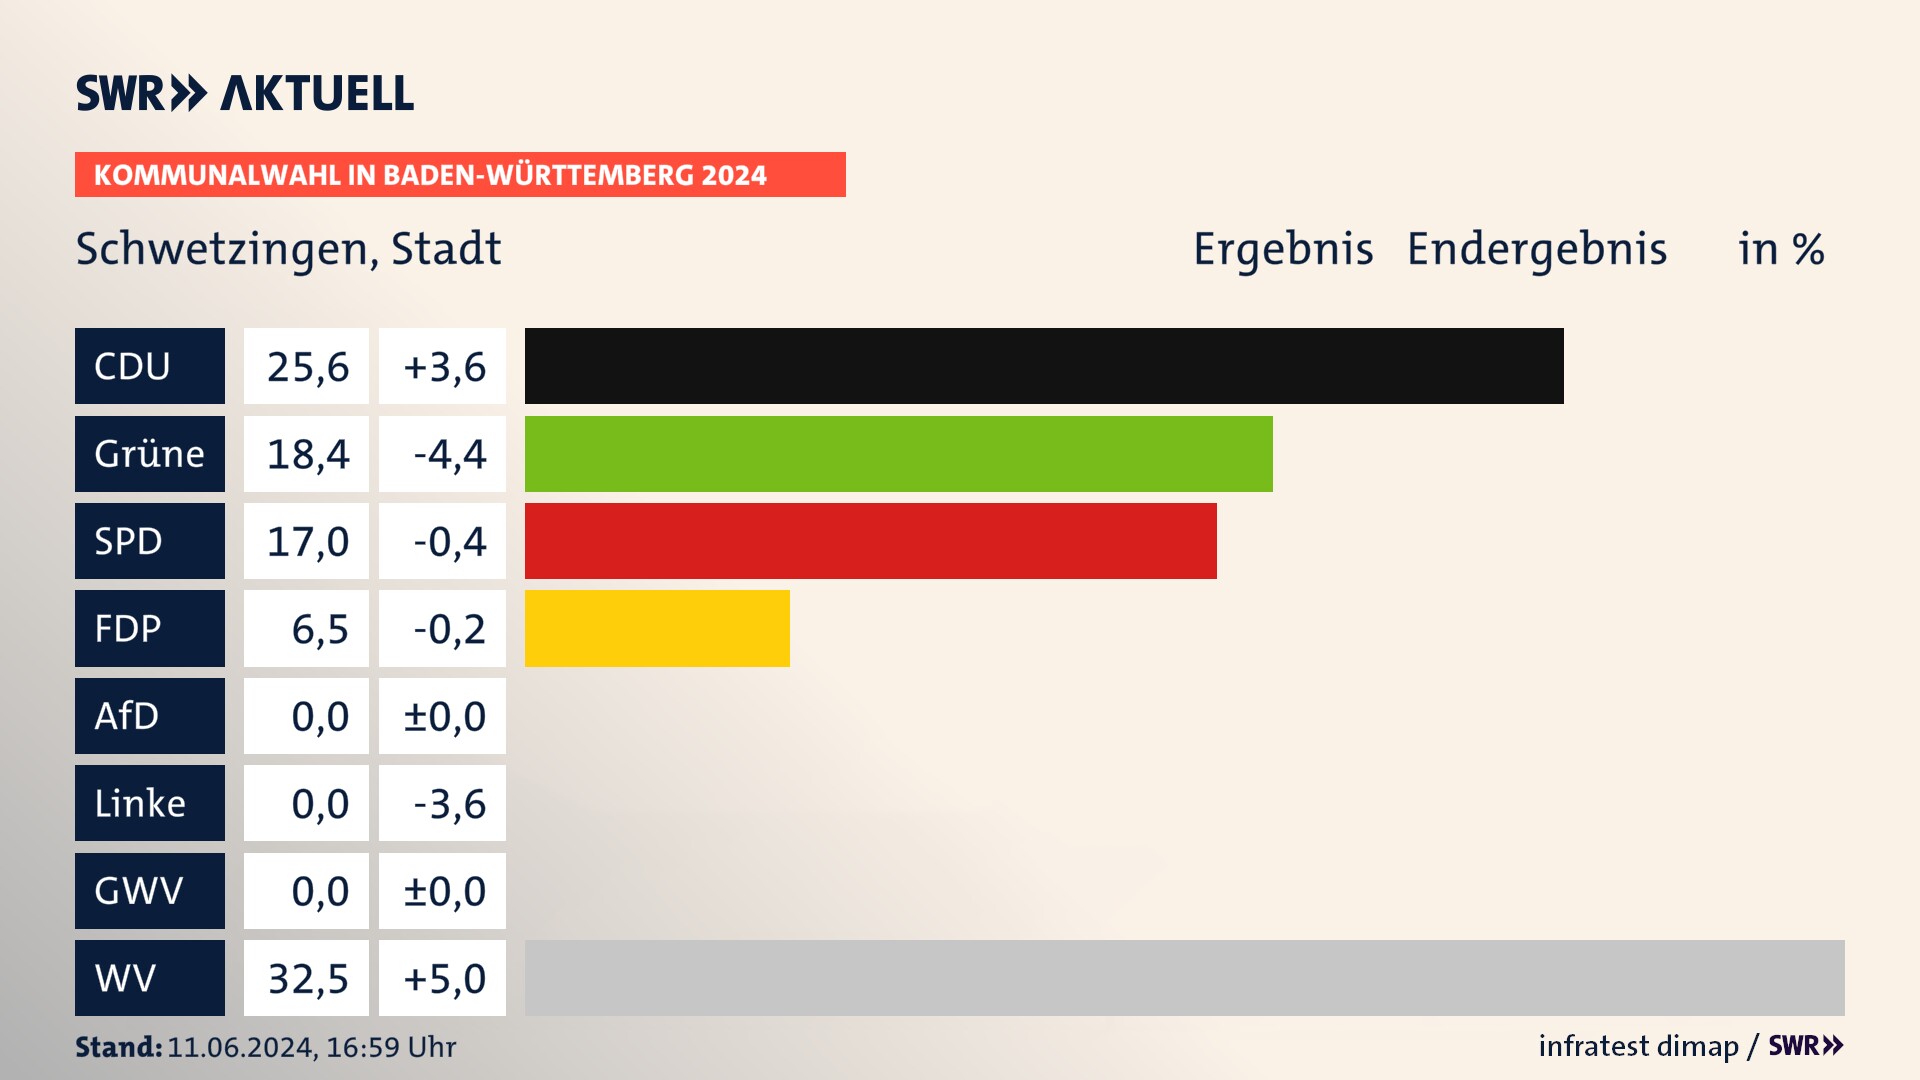 Kommunalwahl 2024 Endergebnis Zweitstimme für Schwetzingen. In Schwetzingen, Stadt erzielt die CDU 25,6 Prozent der gültigen  Stimmen. Die Grünen landen bei 18,4 Prozent. Die SPD erreicht 17,0 Prozent. Die FDP kommt auf 6,5 Prozent. Die Wählervereinigungen landen bei 32,5 Prozent.